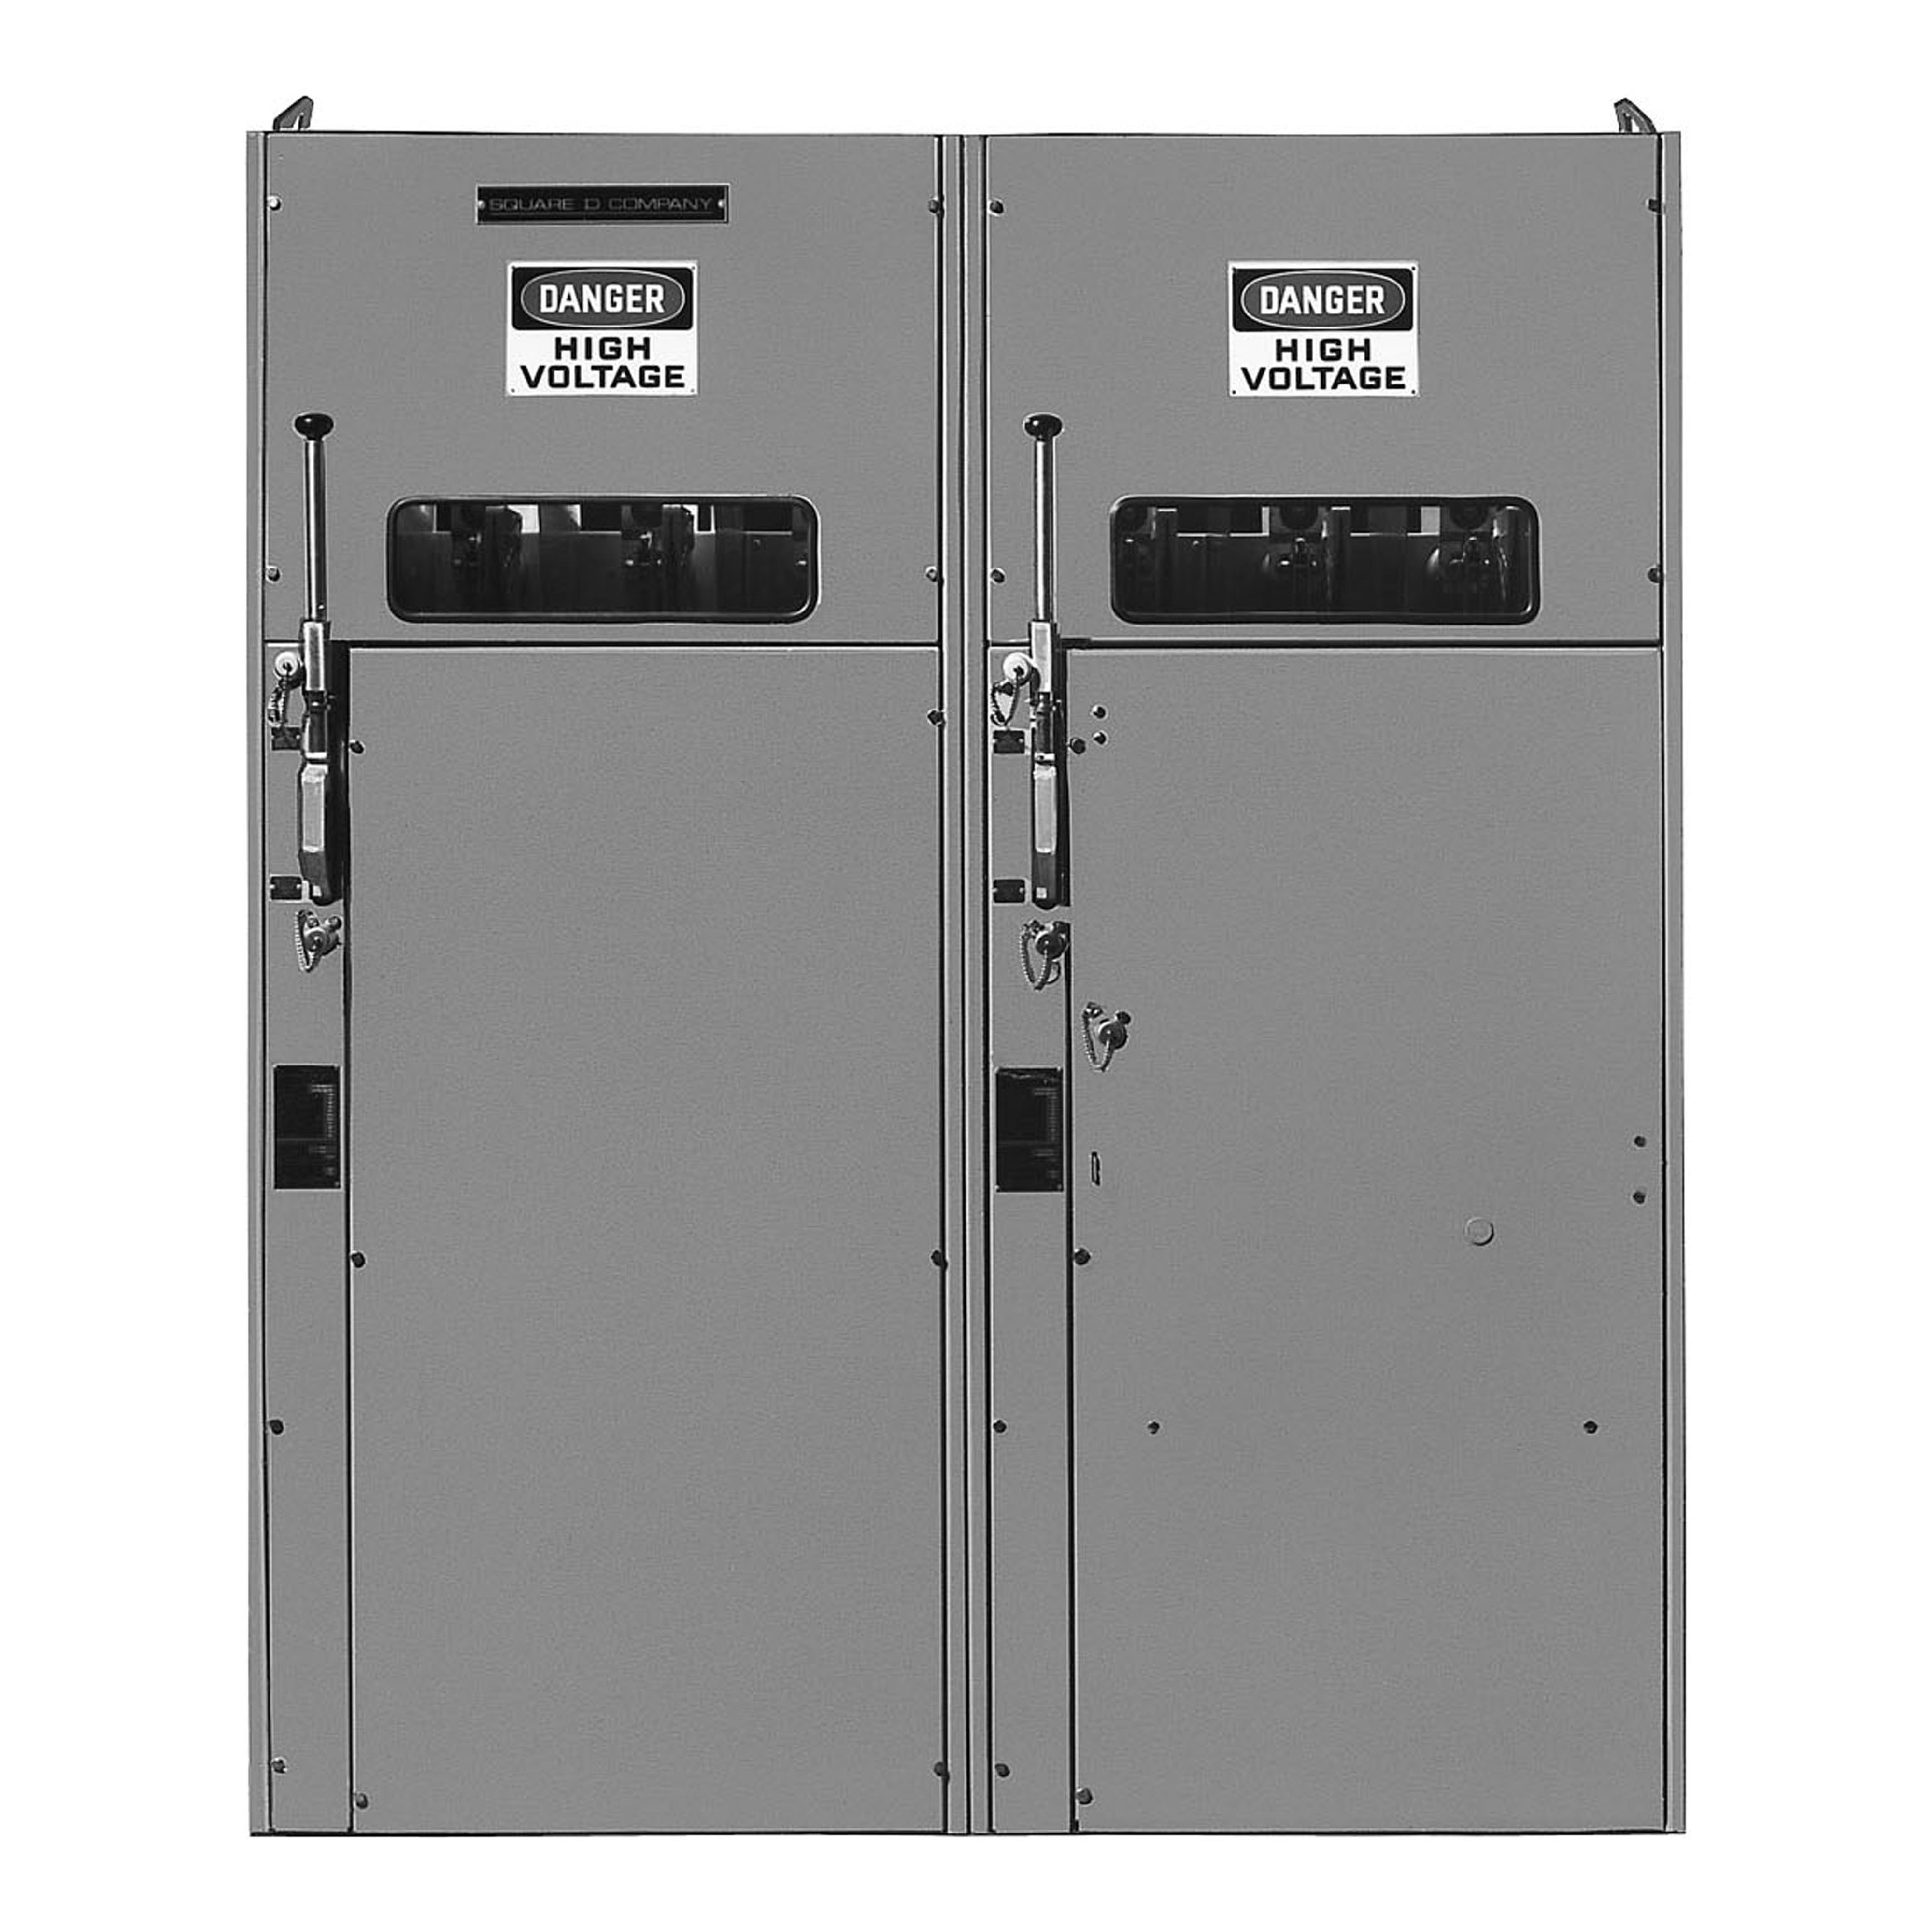 Switchgear, HVL, duplex, 600A, 15kV, 10 to 100E current limit fuse, transformer disconnect, left, NEMA 1